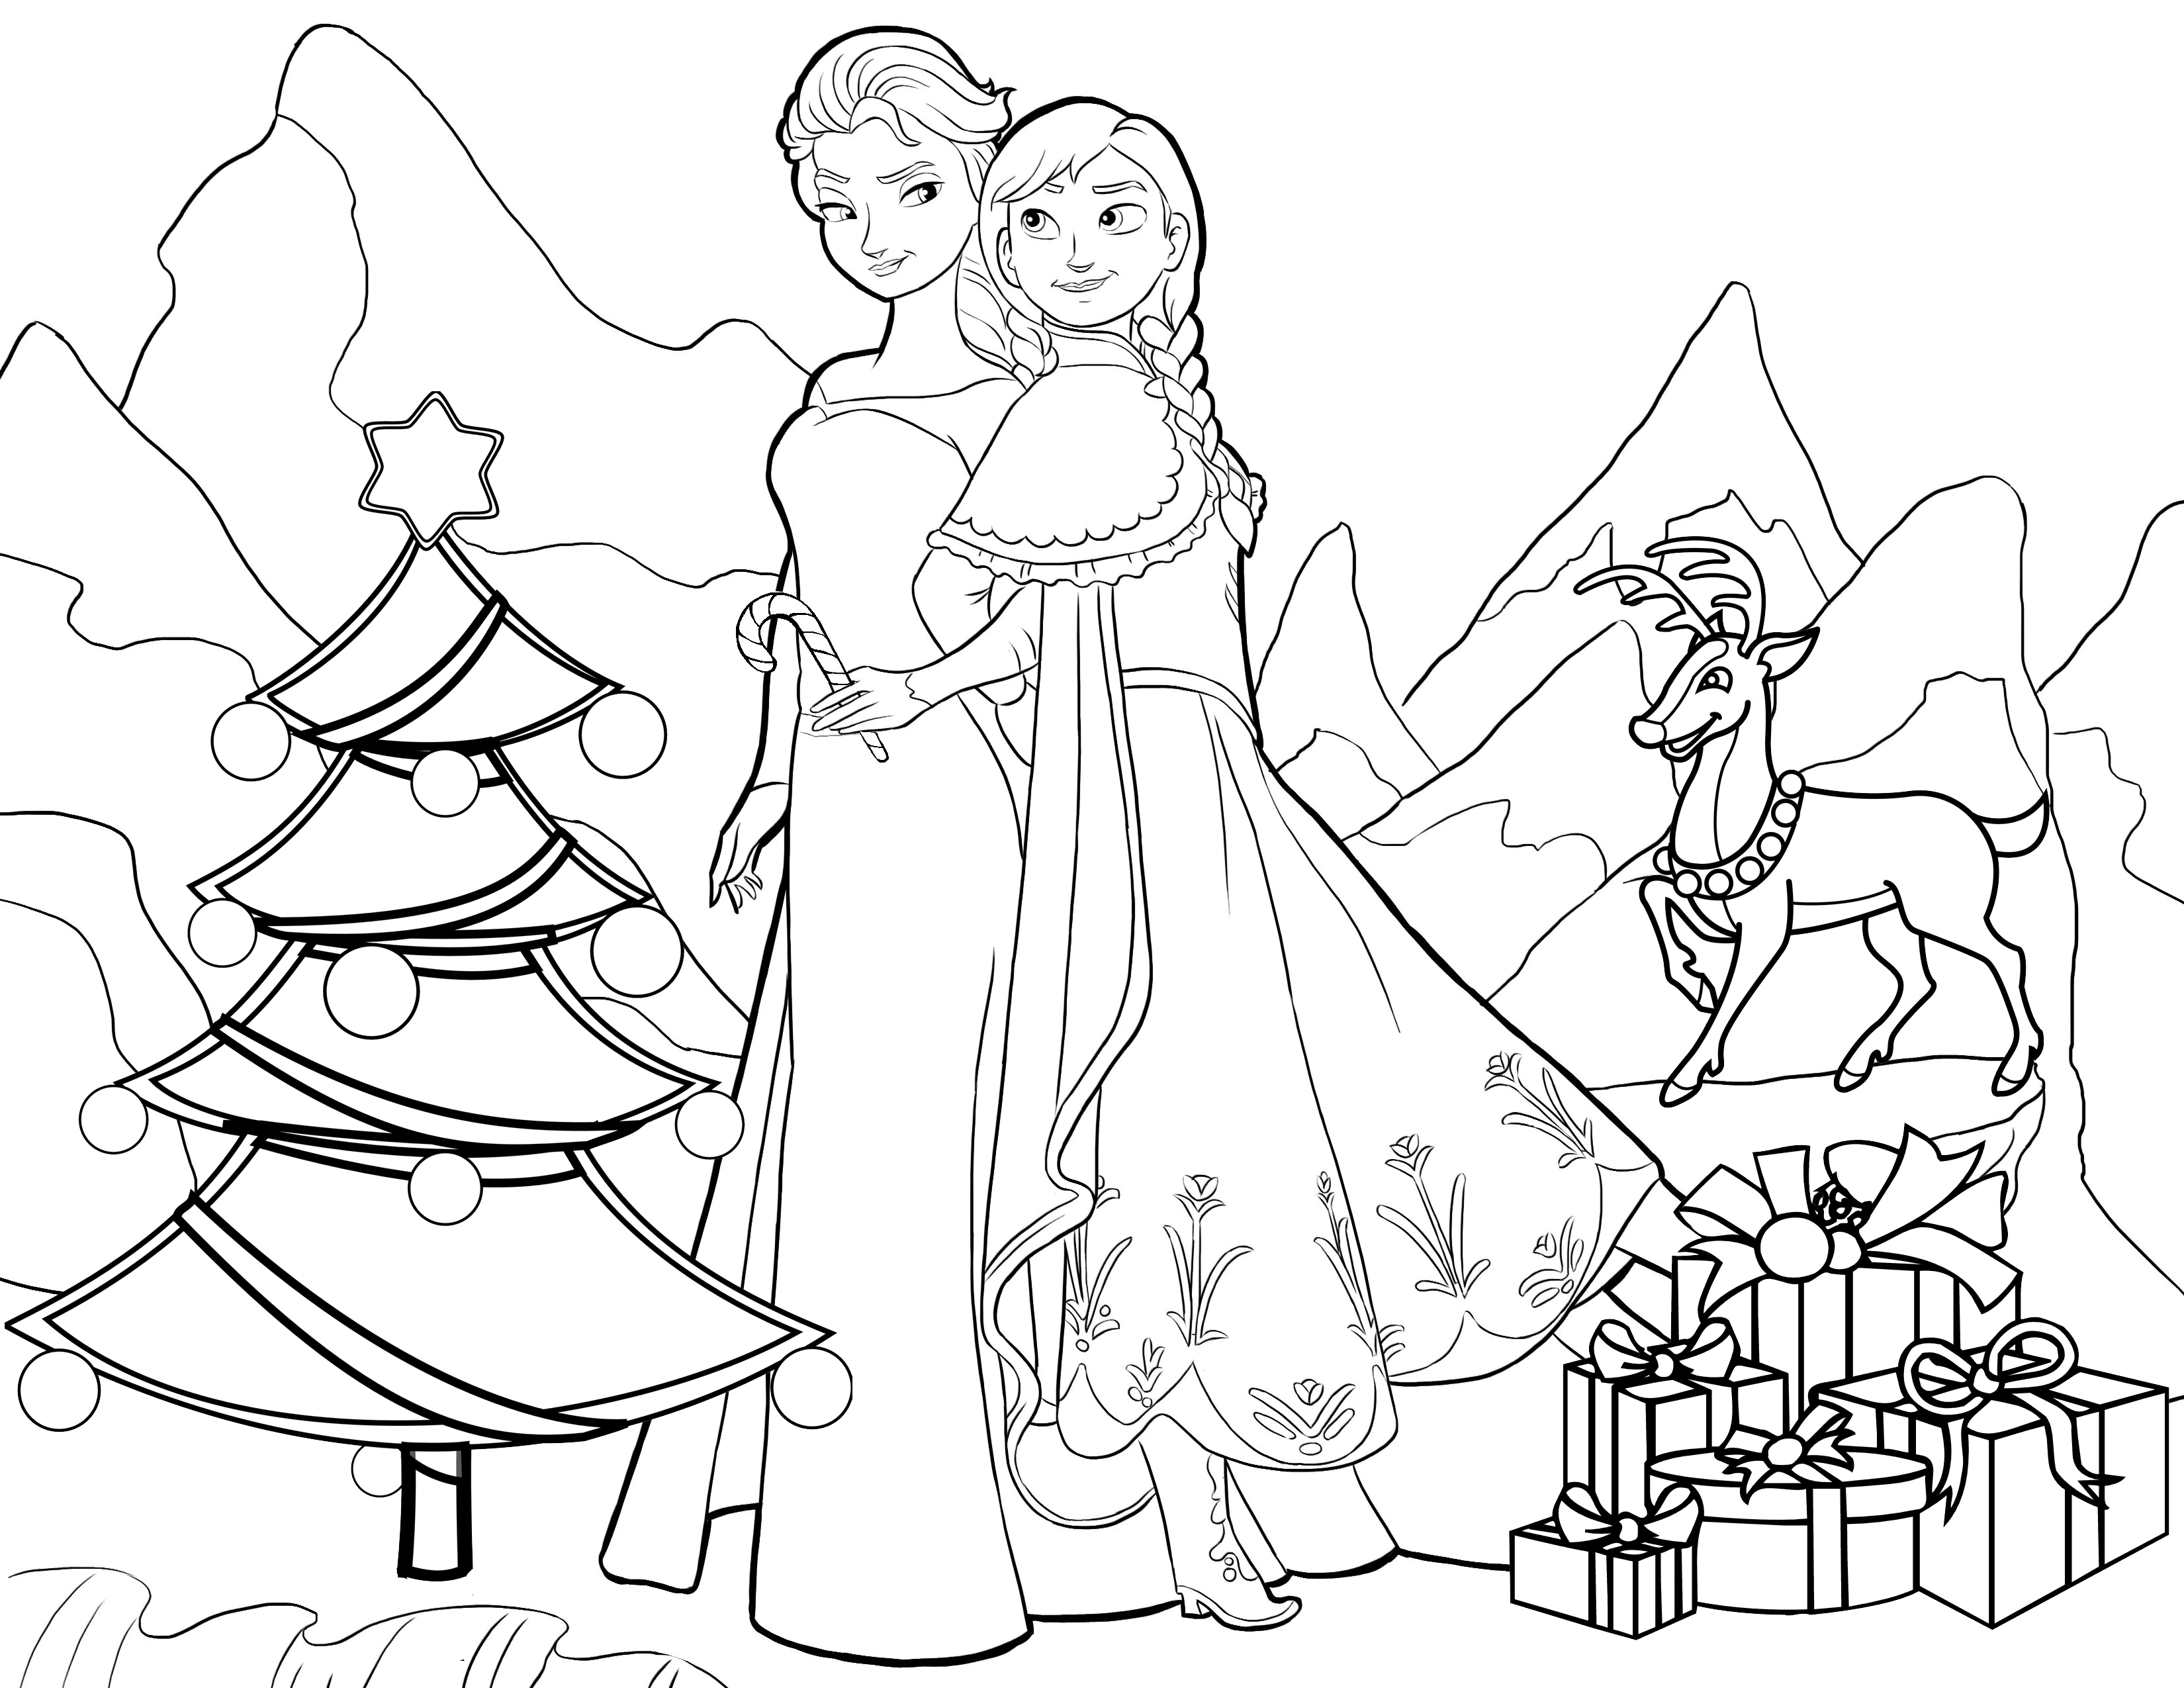 Tranh tô màu công chúa Elsa và Anna giáng sinh